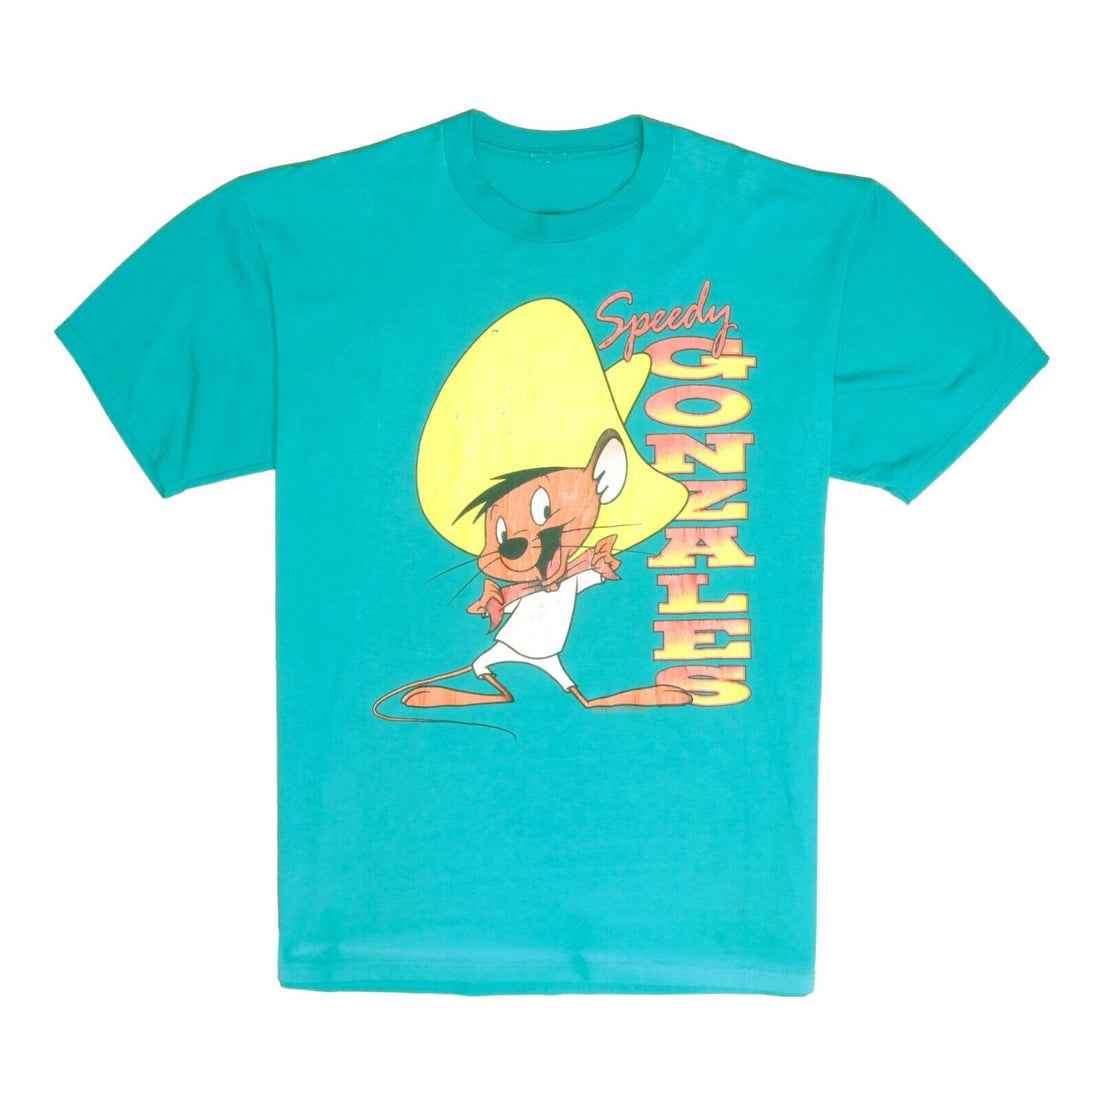 Vintage Speedy Gonzalez Warner Bros T-Shirt Size XL Teal Cartoon 1993 90s